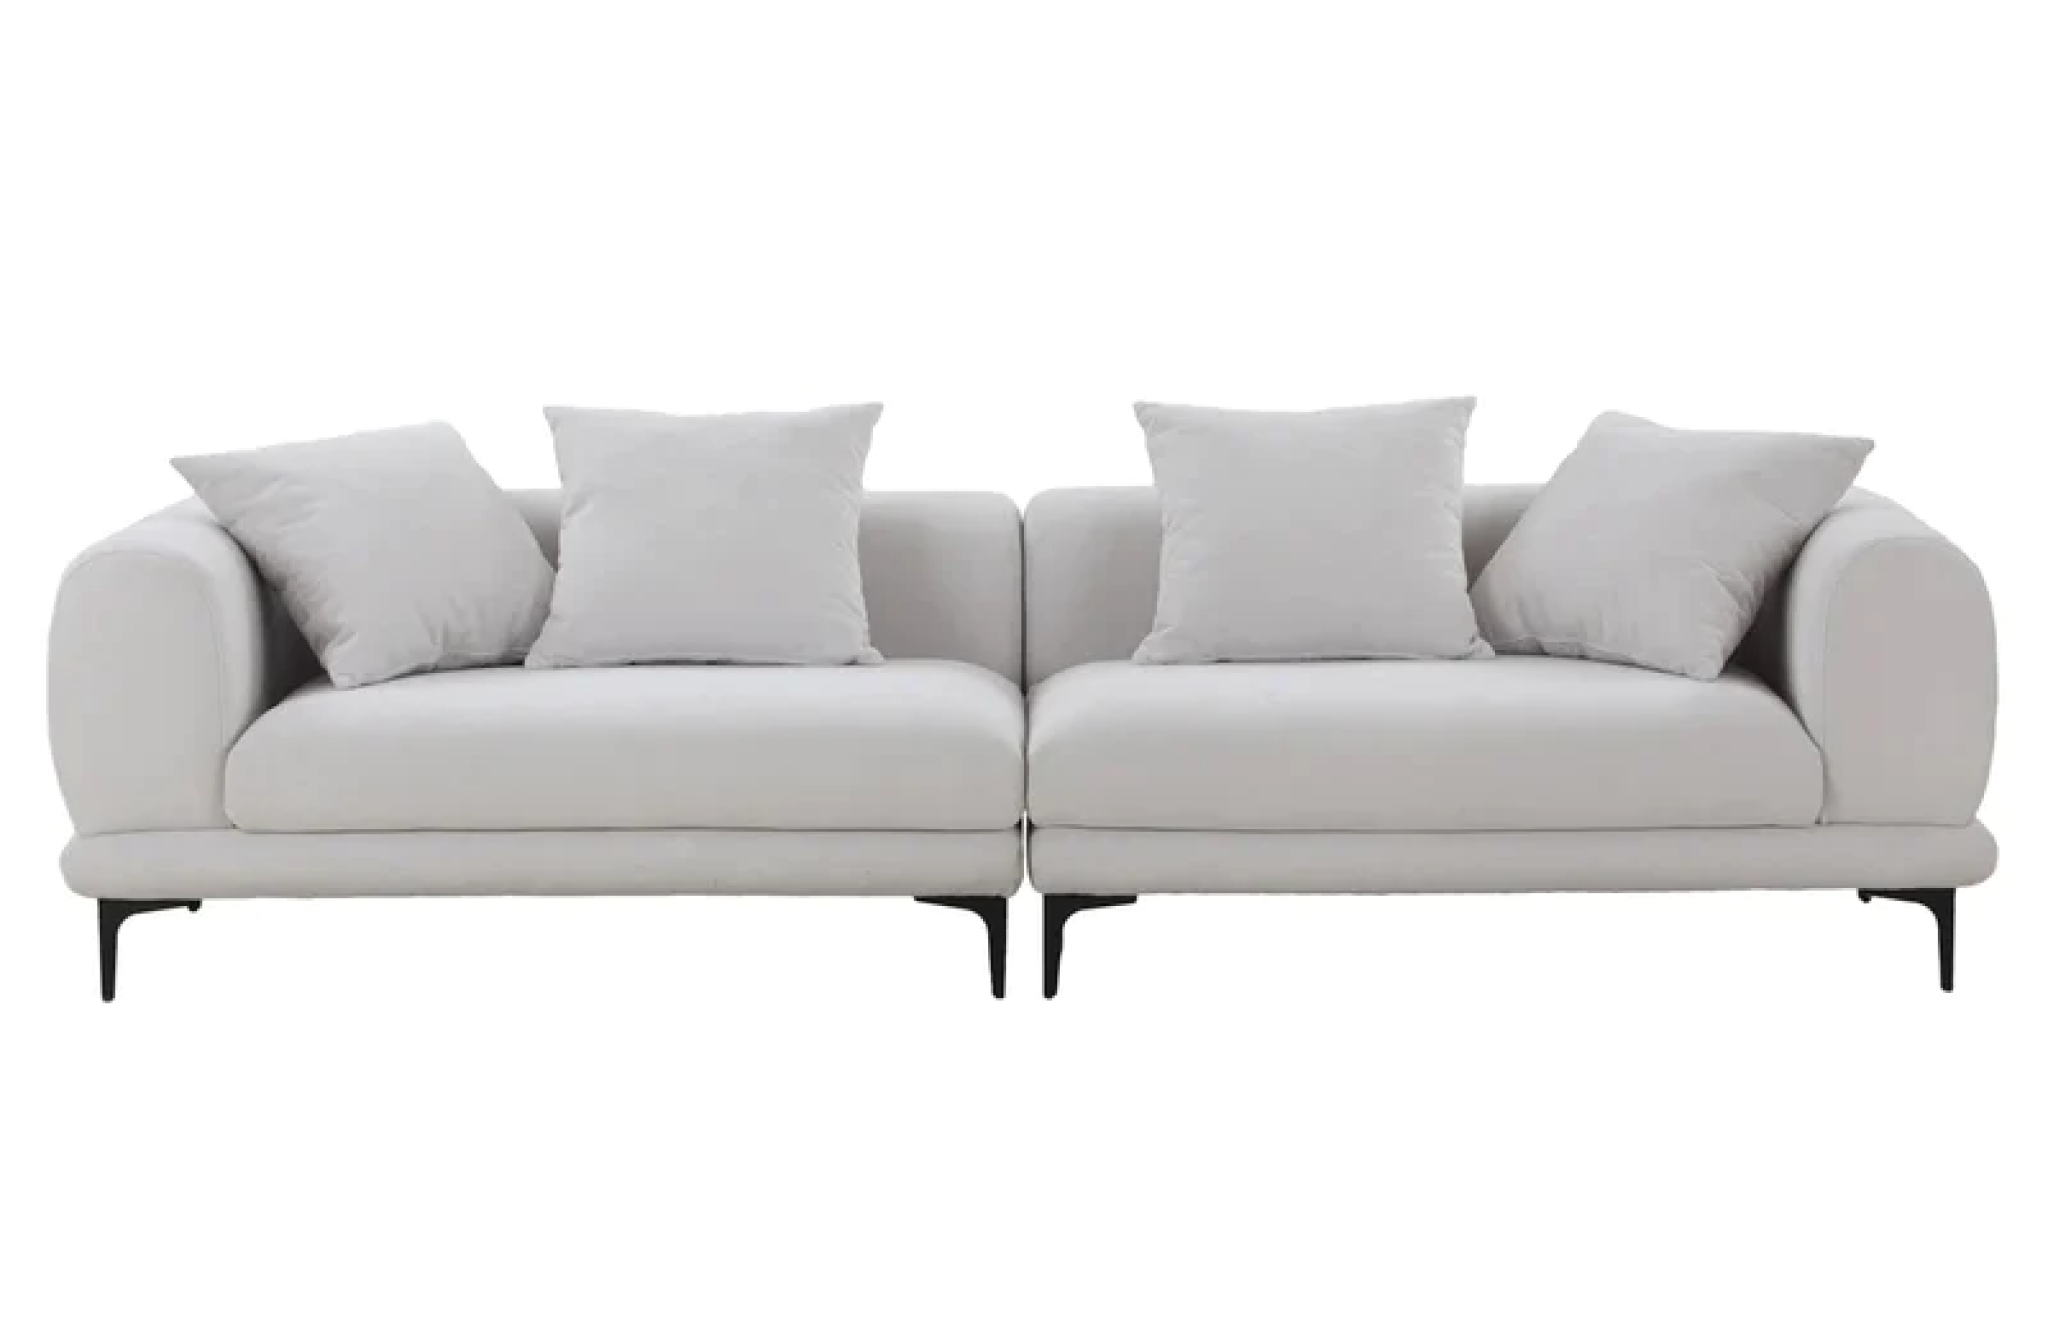 White comfy sofa